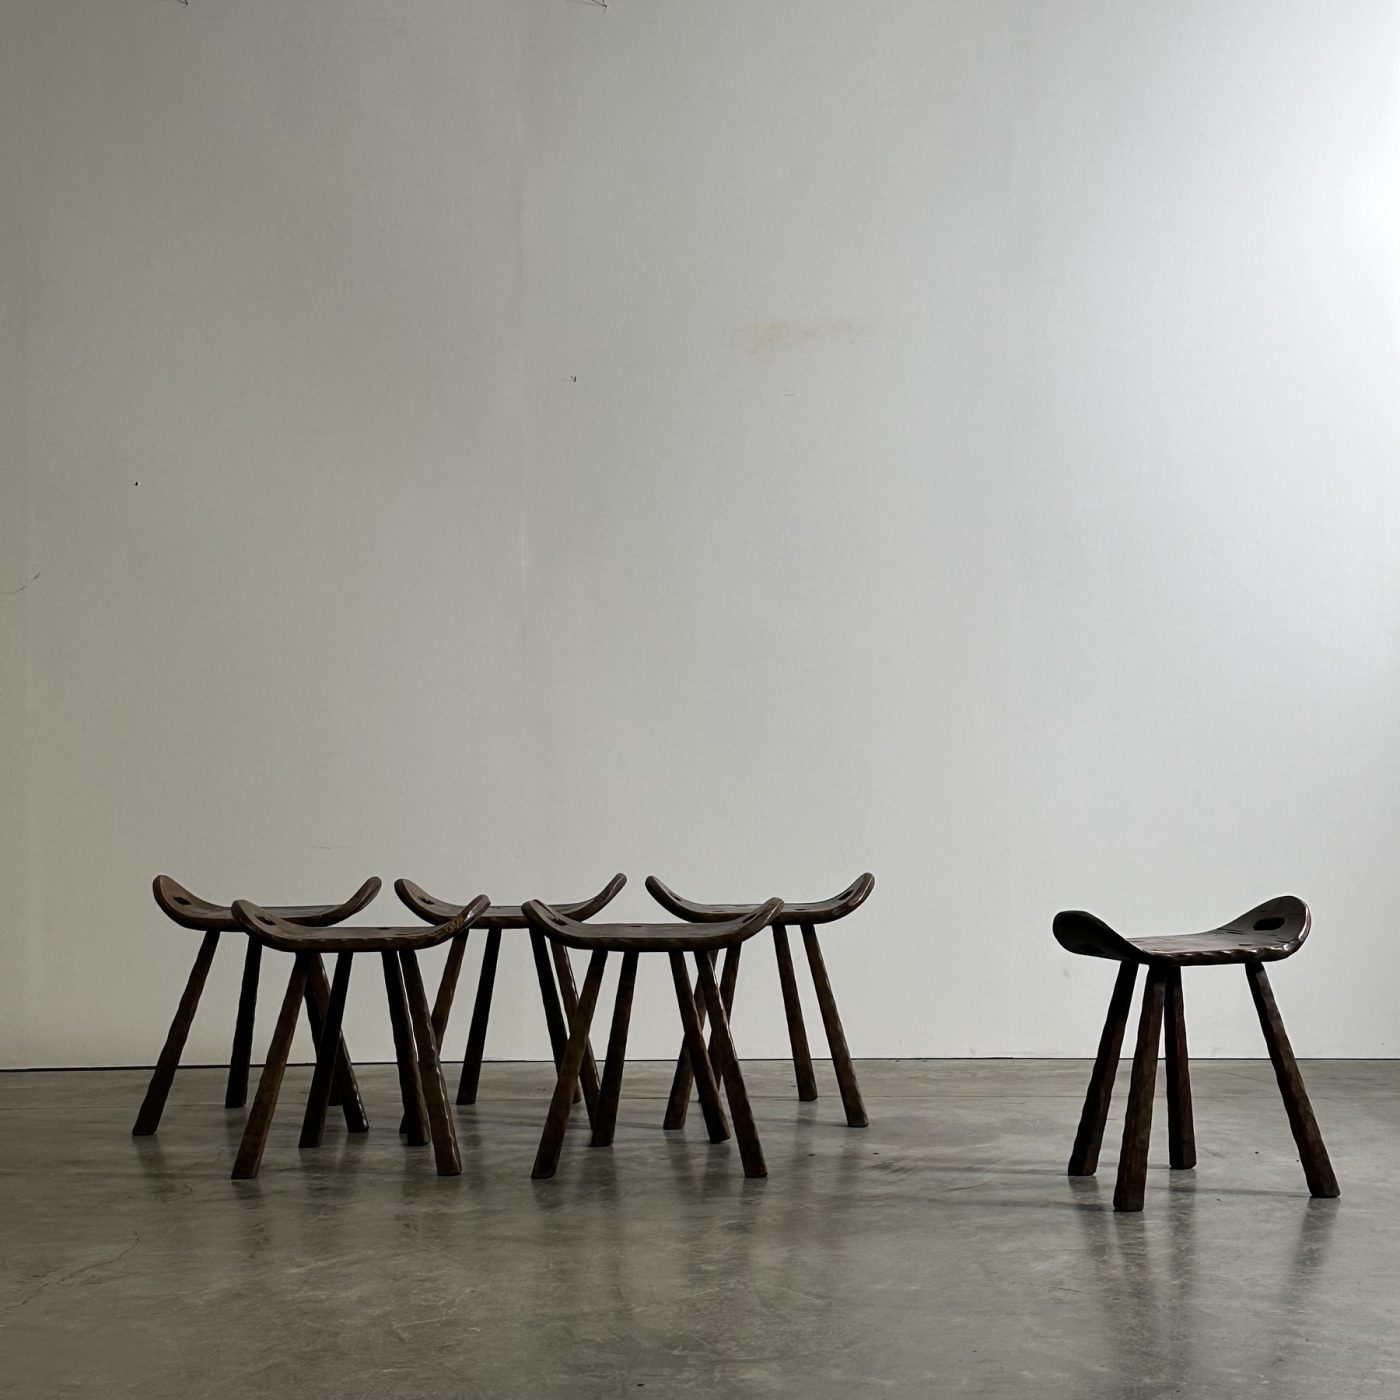 objet-vagabond-wooden-stools0003